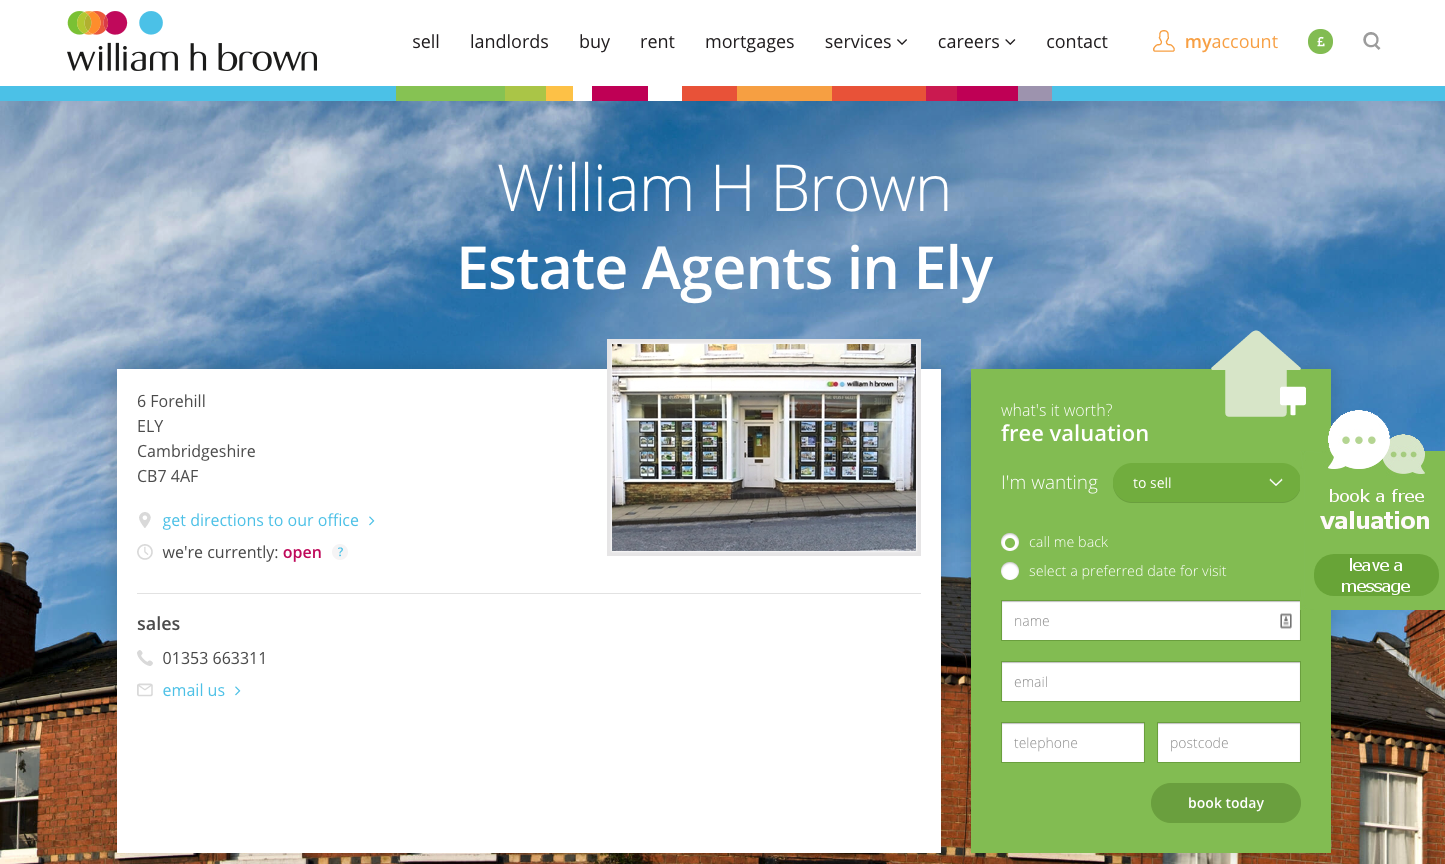 William H Brown estate agent example